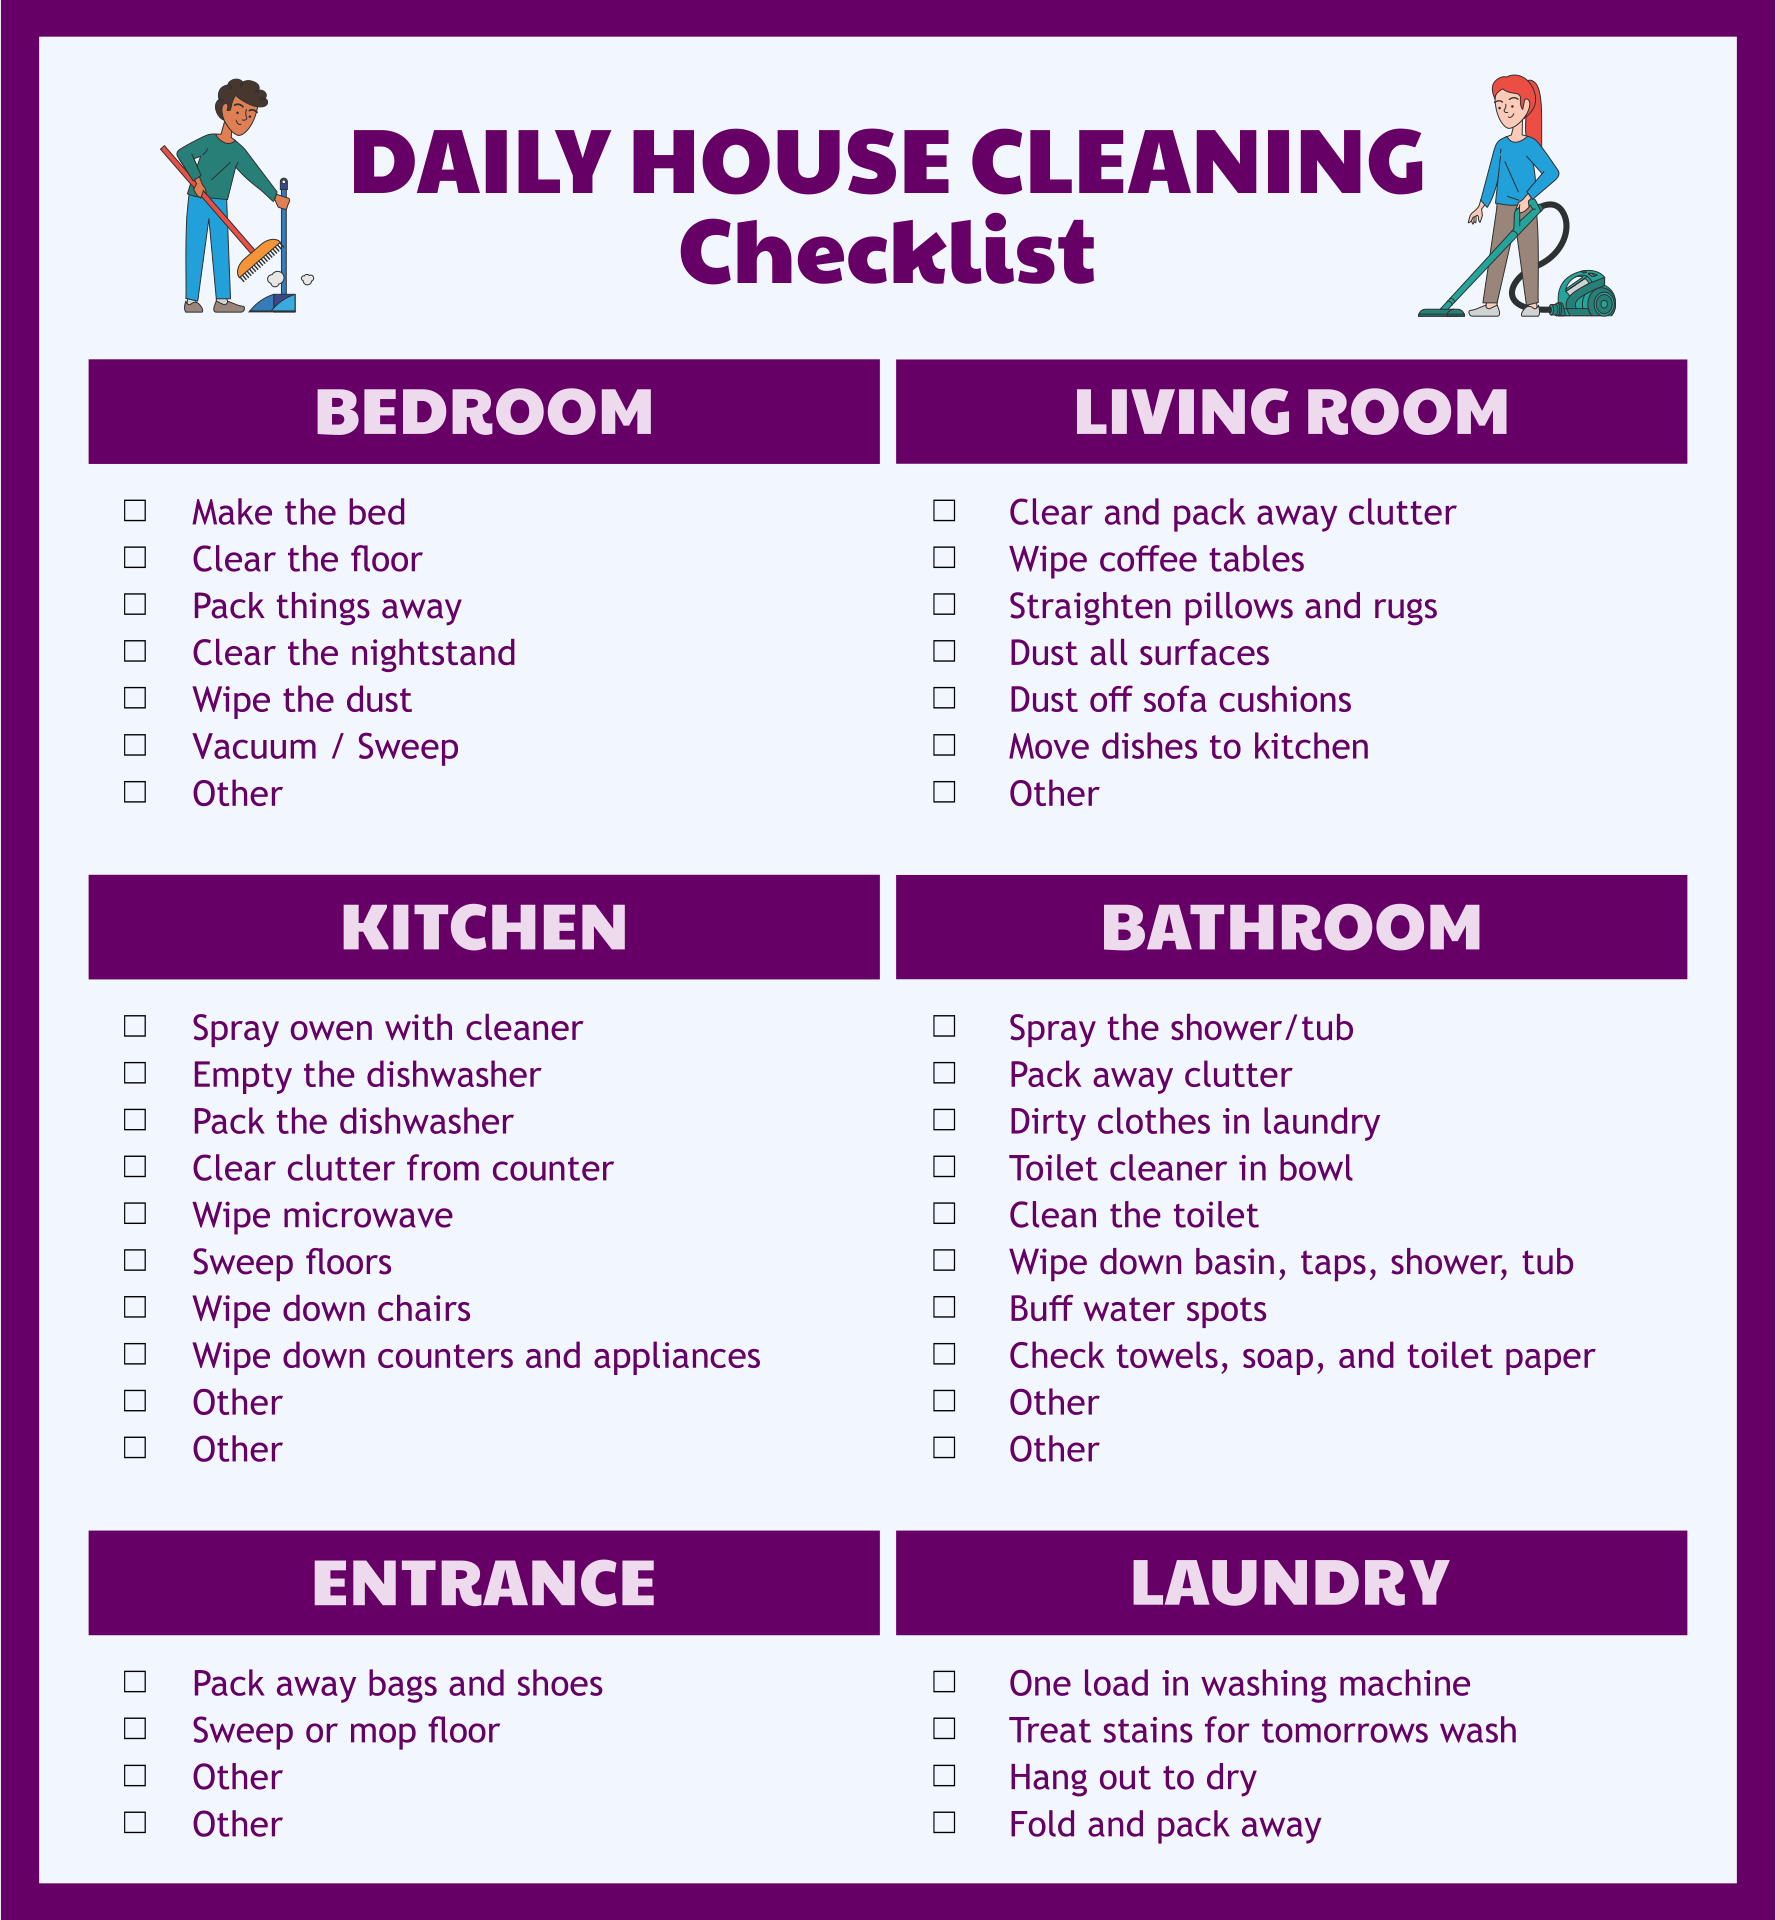 9-best-images-of-hotel-housekeeping-checklist-printable-housekeeping